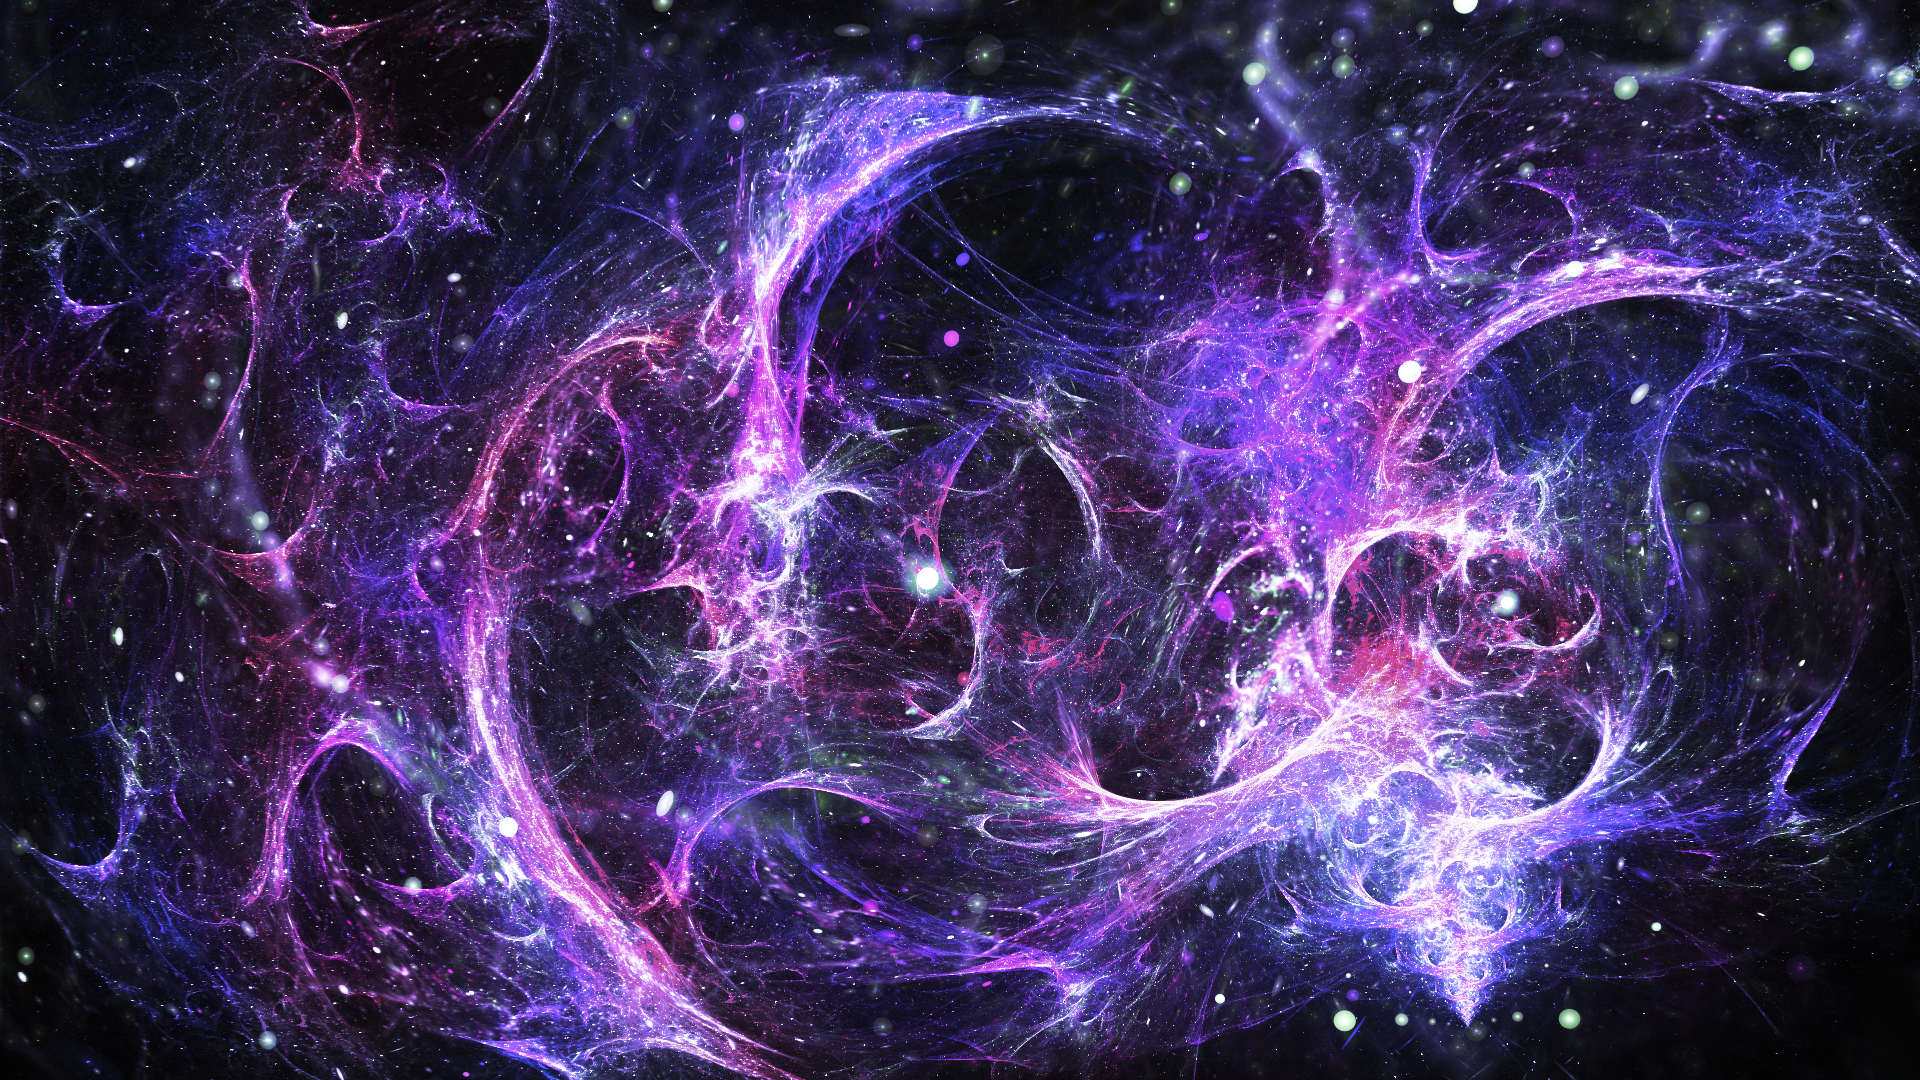 Nebula Galaxy Plasm Stars Digital Art Dark Matter 1920x1080